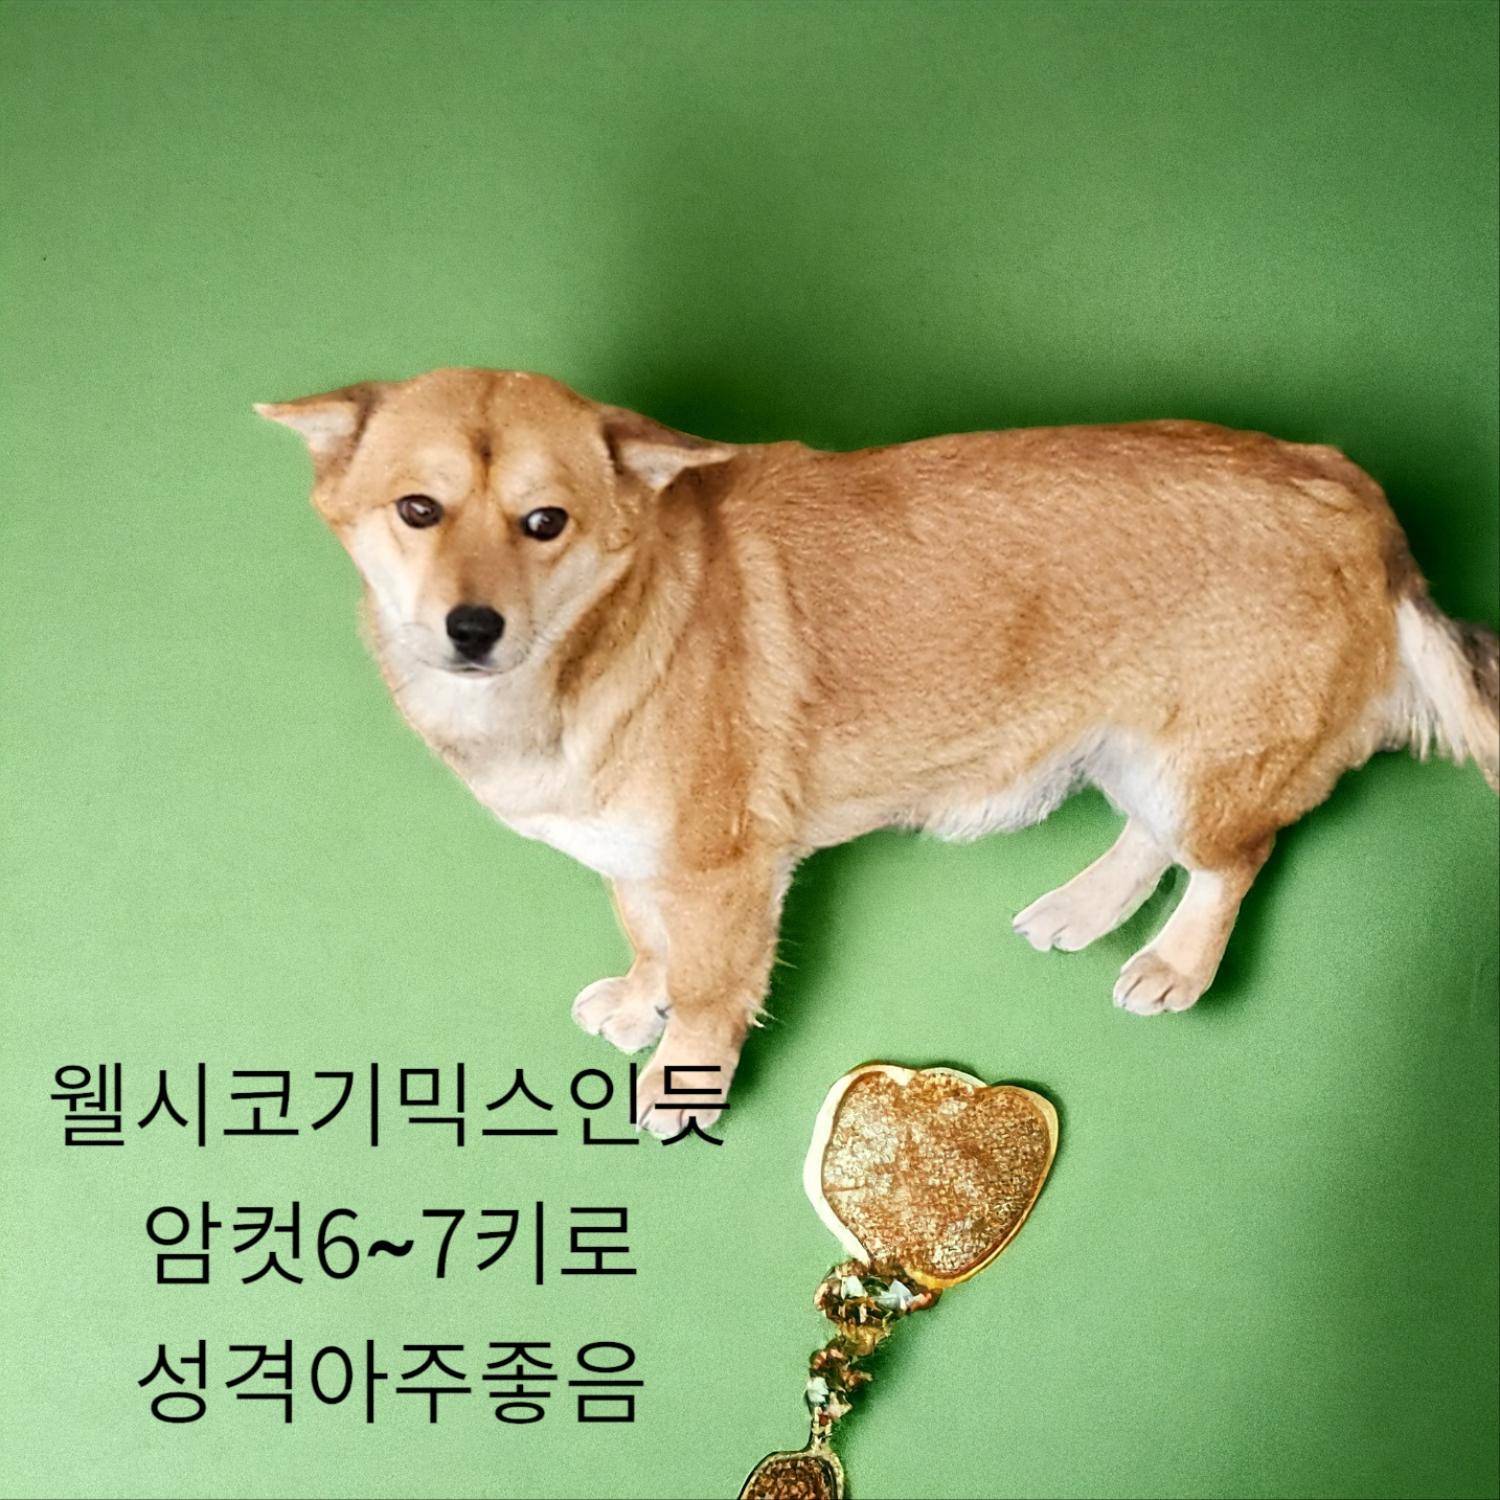 공고 번호가 경북-성주-2024-00187인 기타 동물 사진